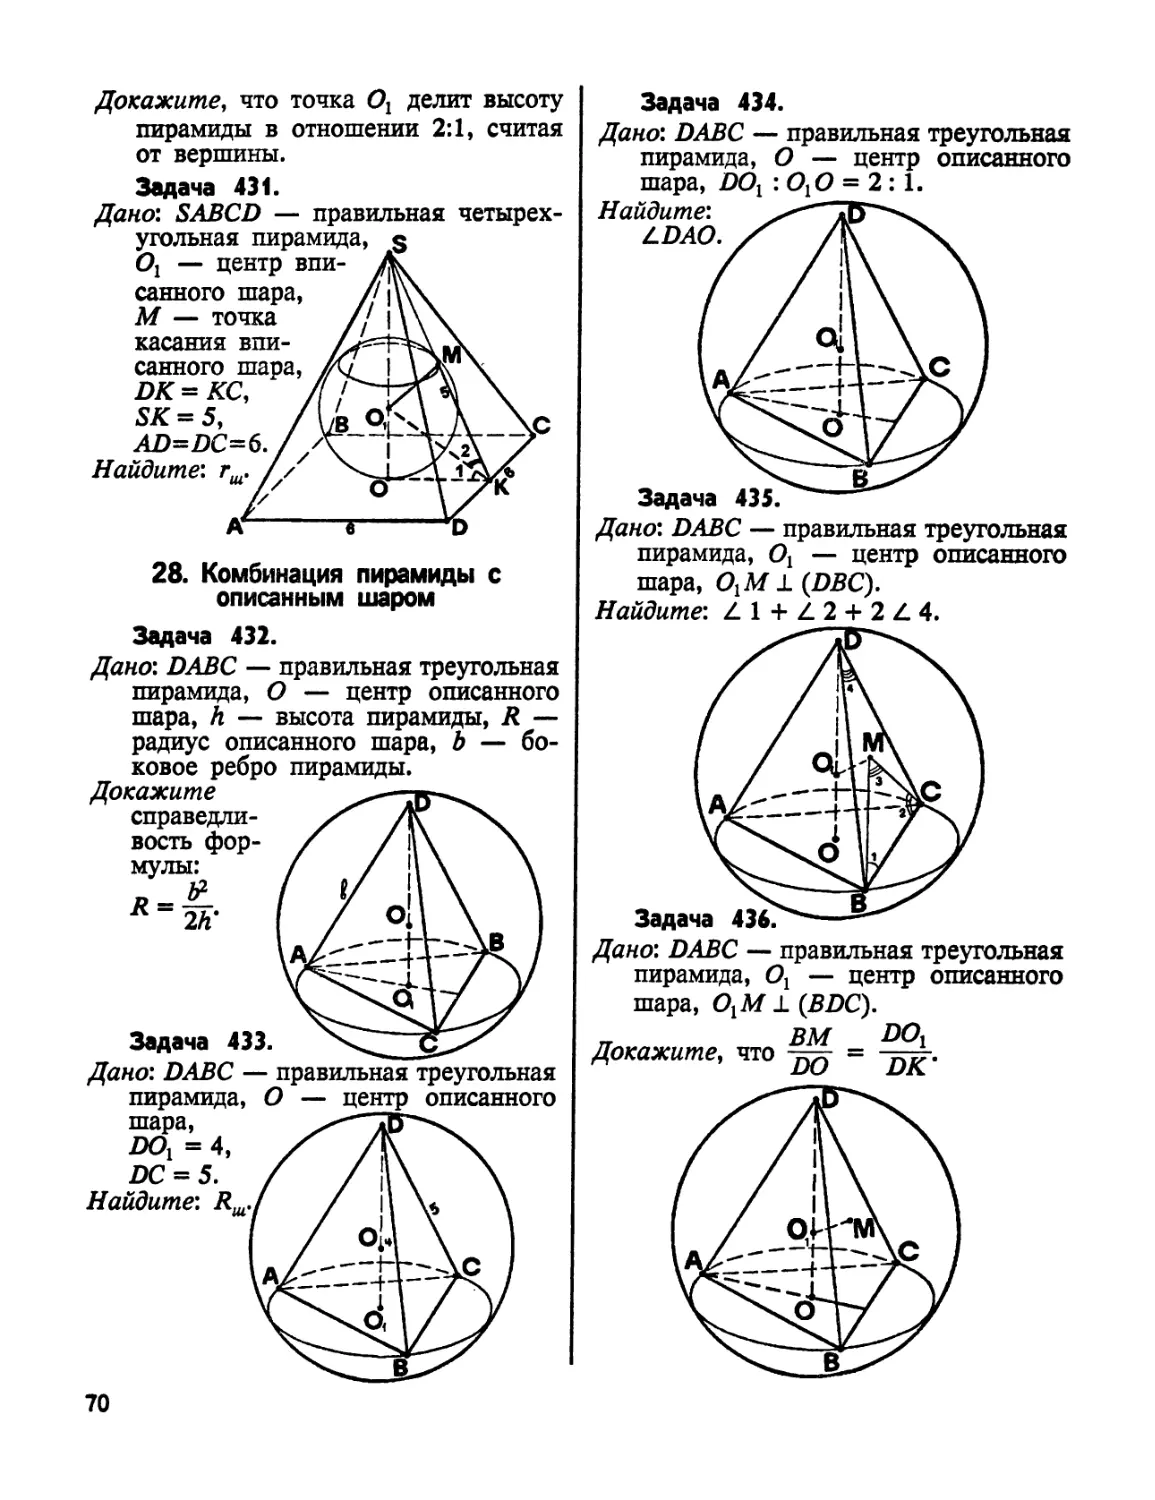 27. Комбинация пирамиды с описанным шаром